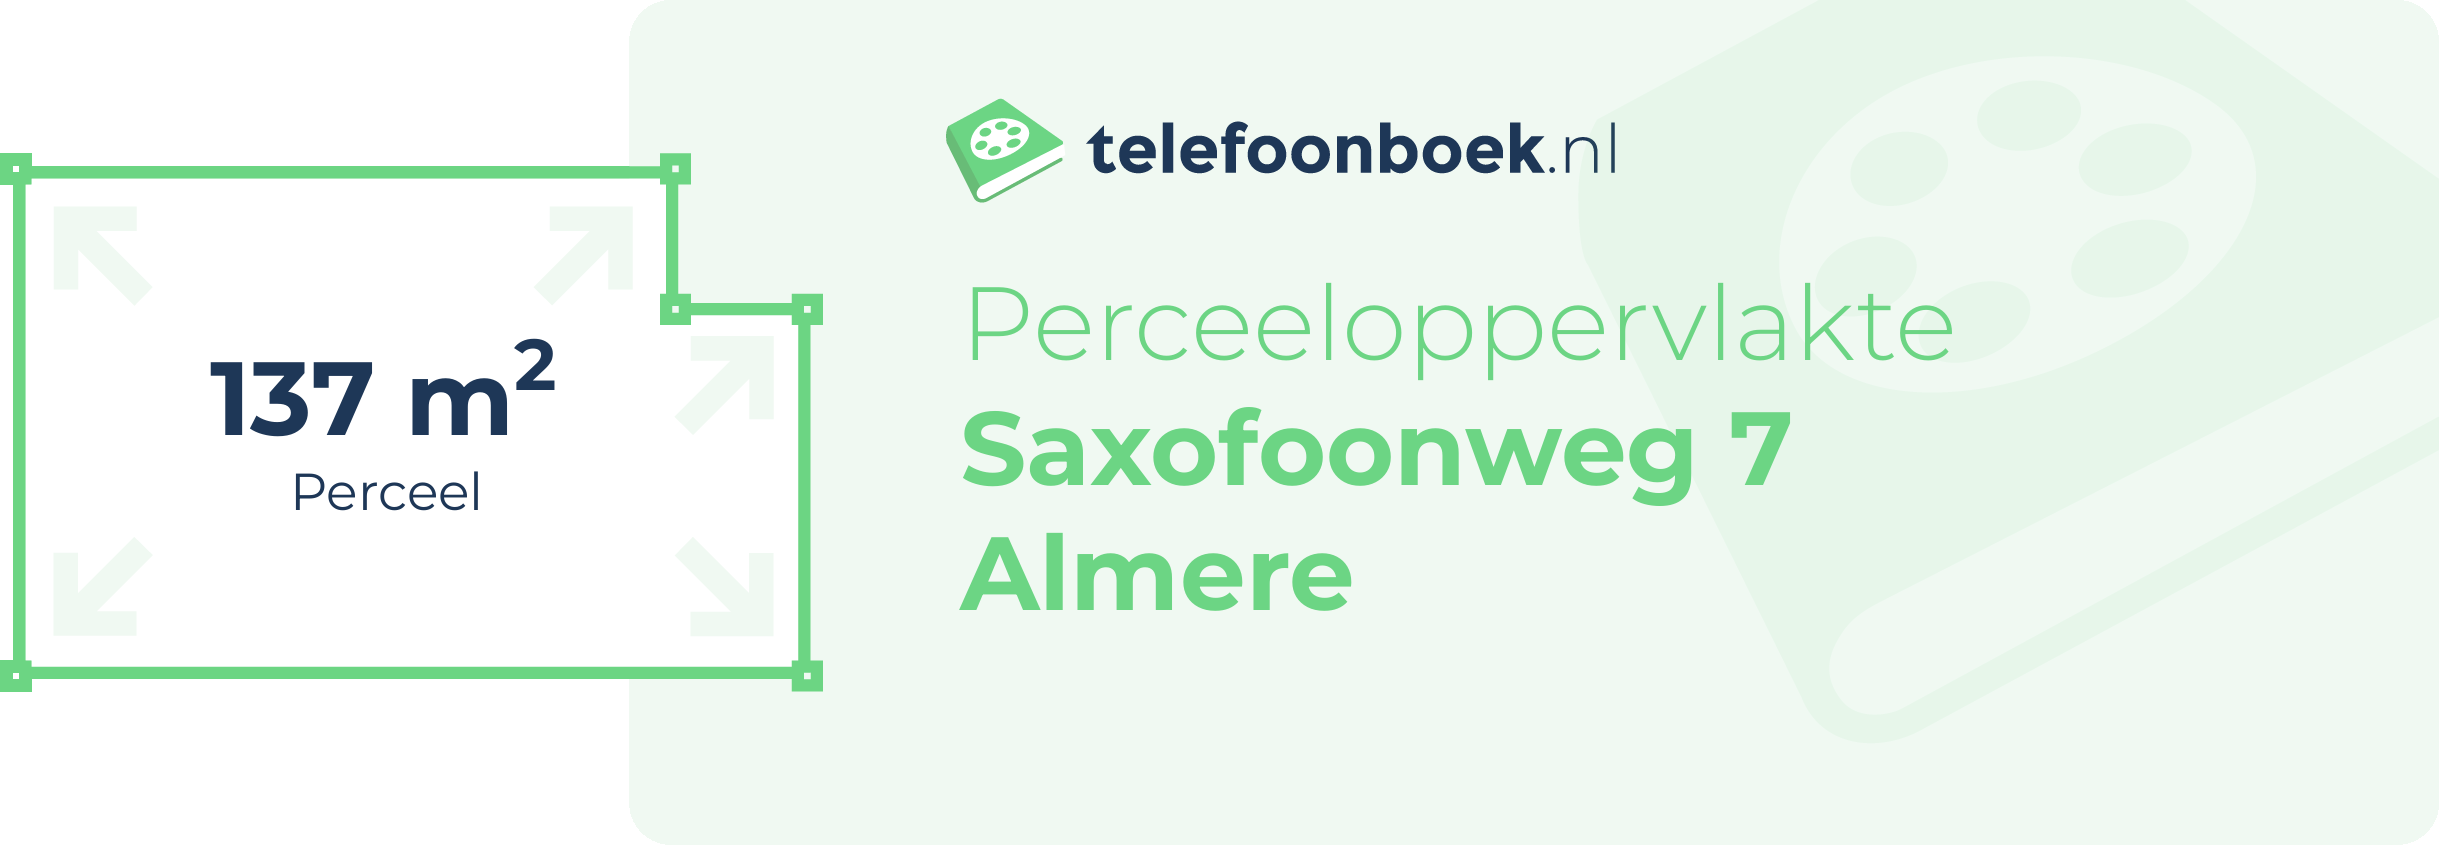 Perceeloppervlakte Saxofoonweg 7 Almere